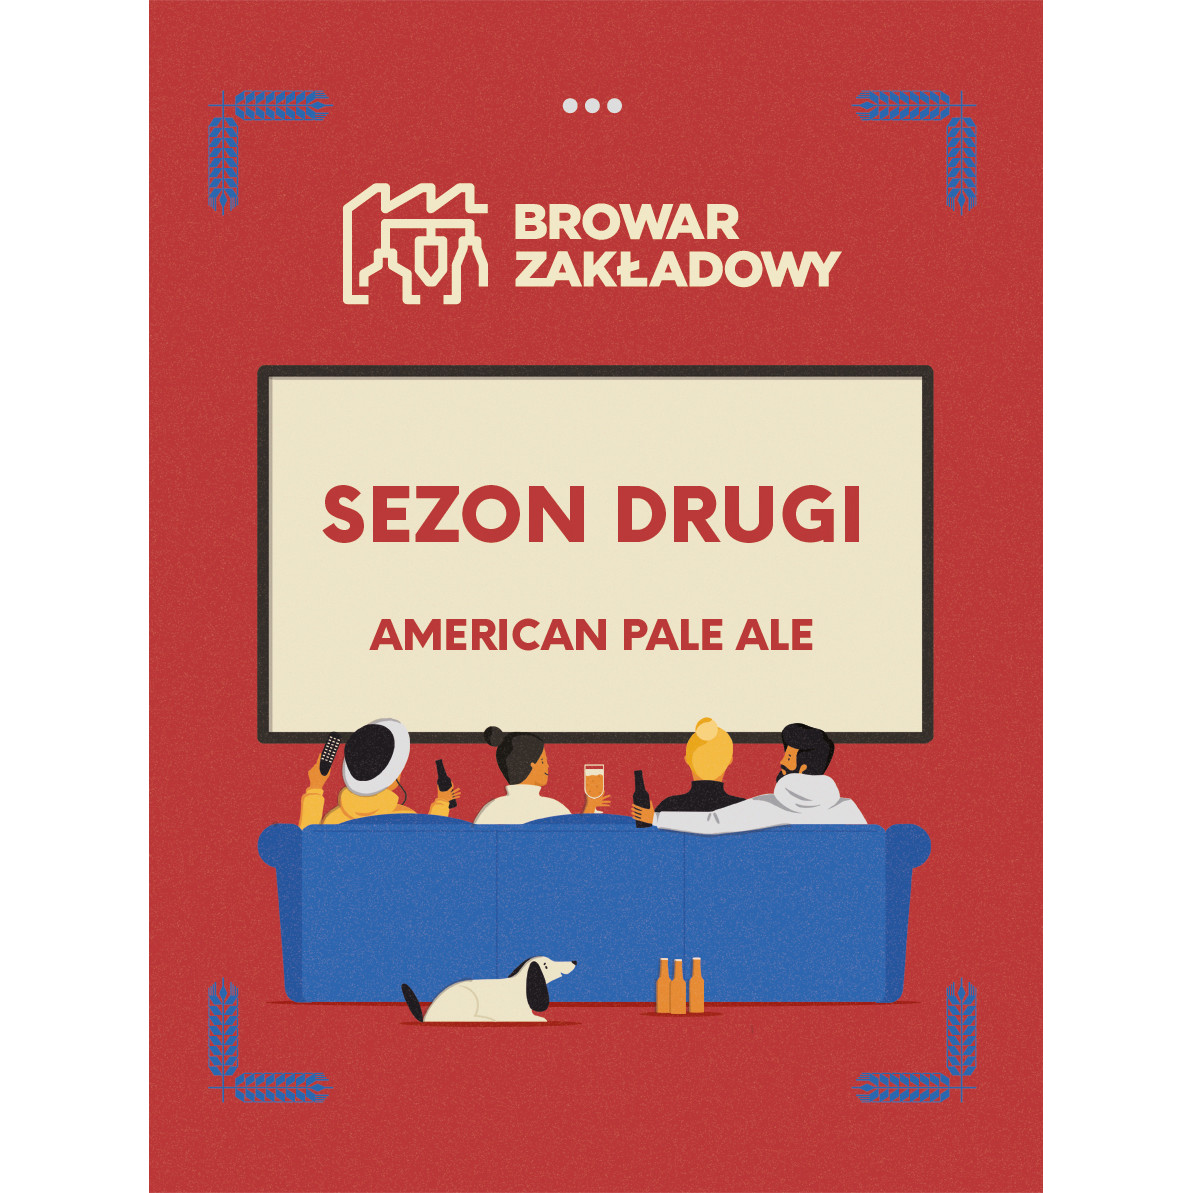 Zakładowy SEZON DRUGI – American Pale Ale